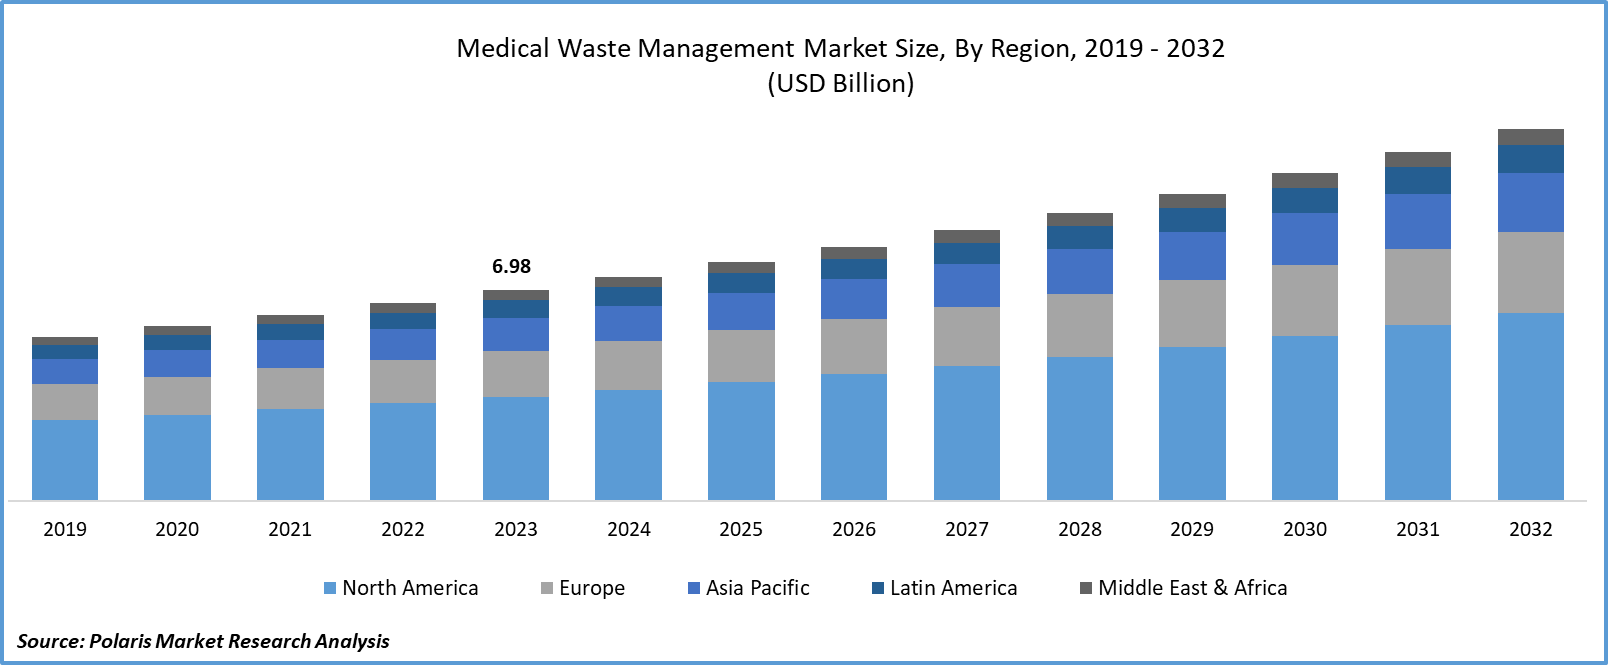 Medical Waste Management Market Size